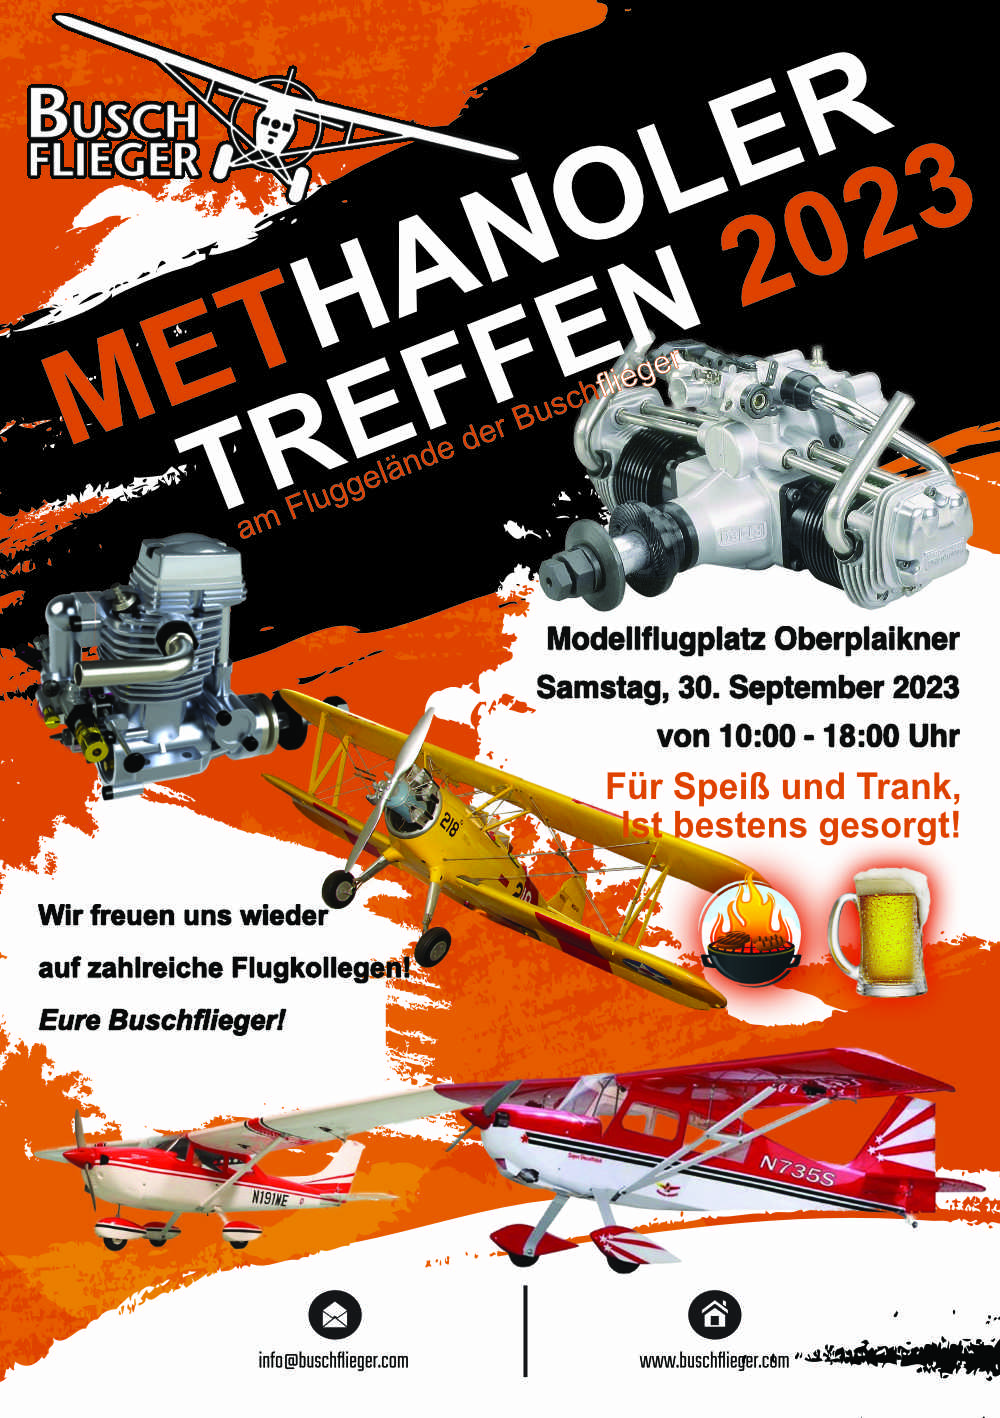 Methanoler Treffen 2023